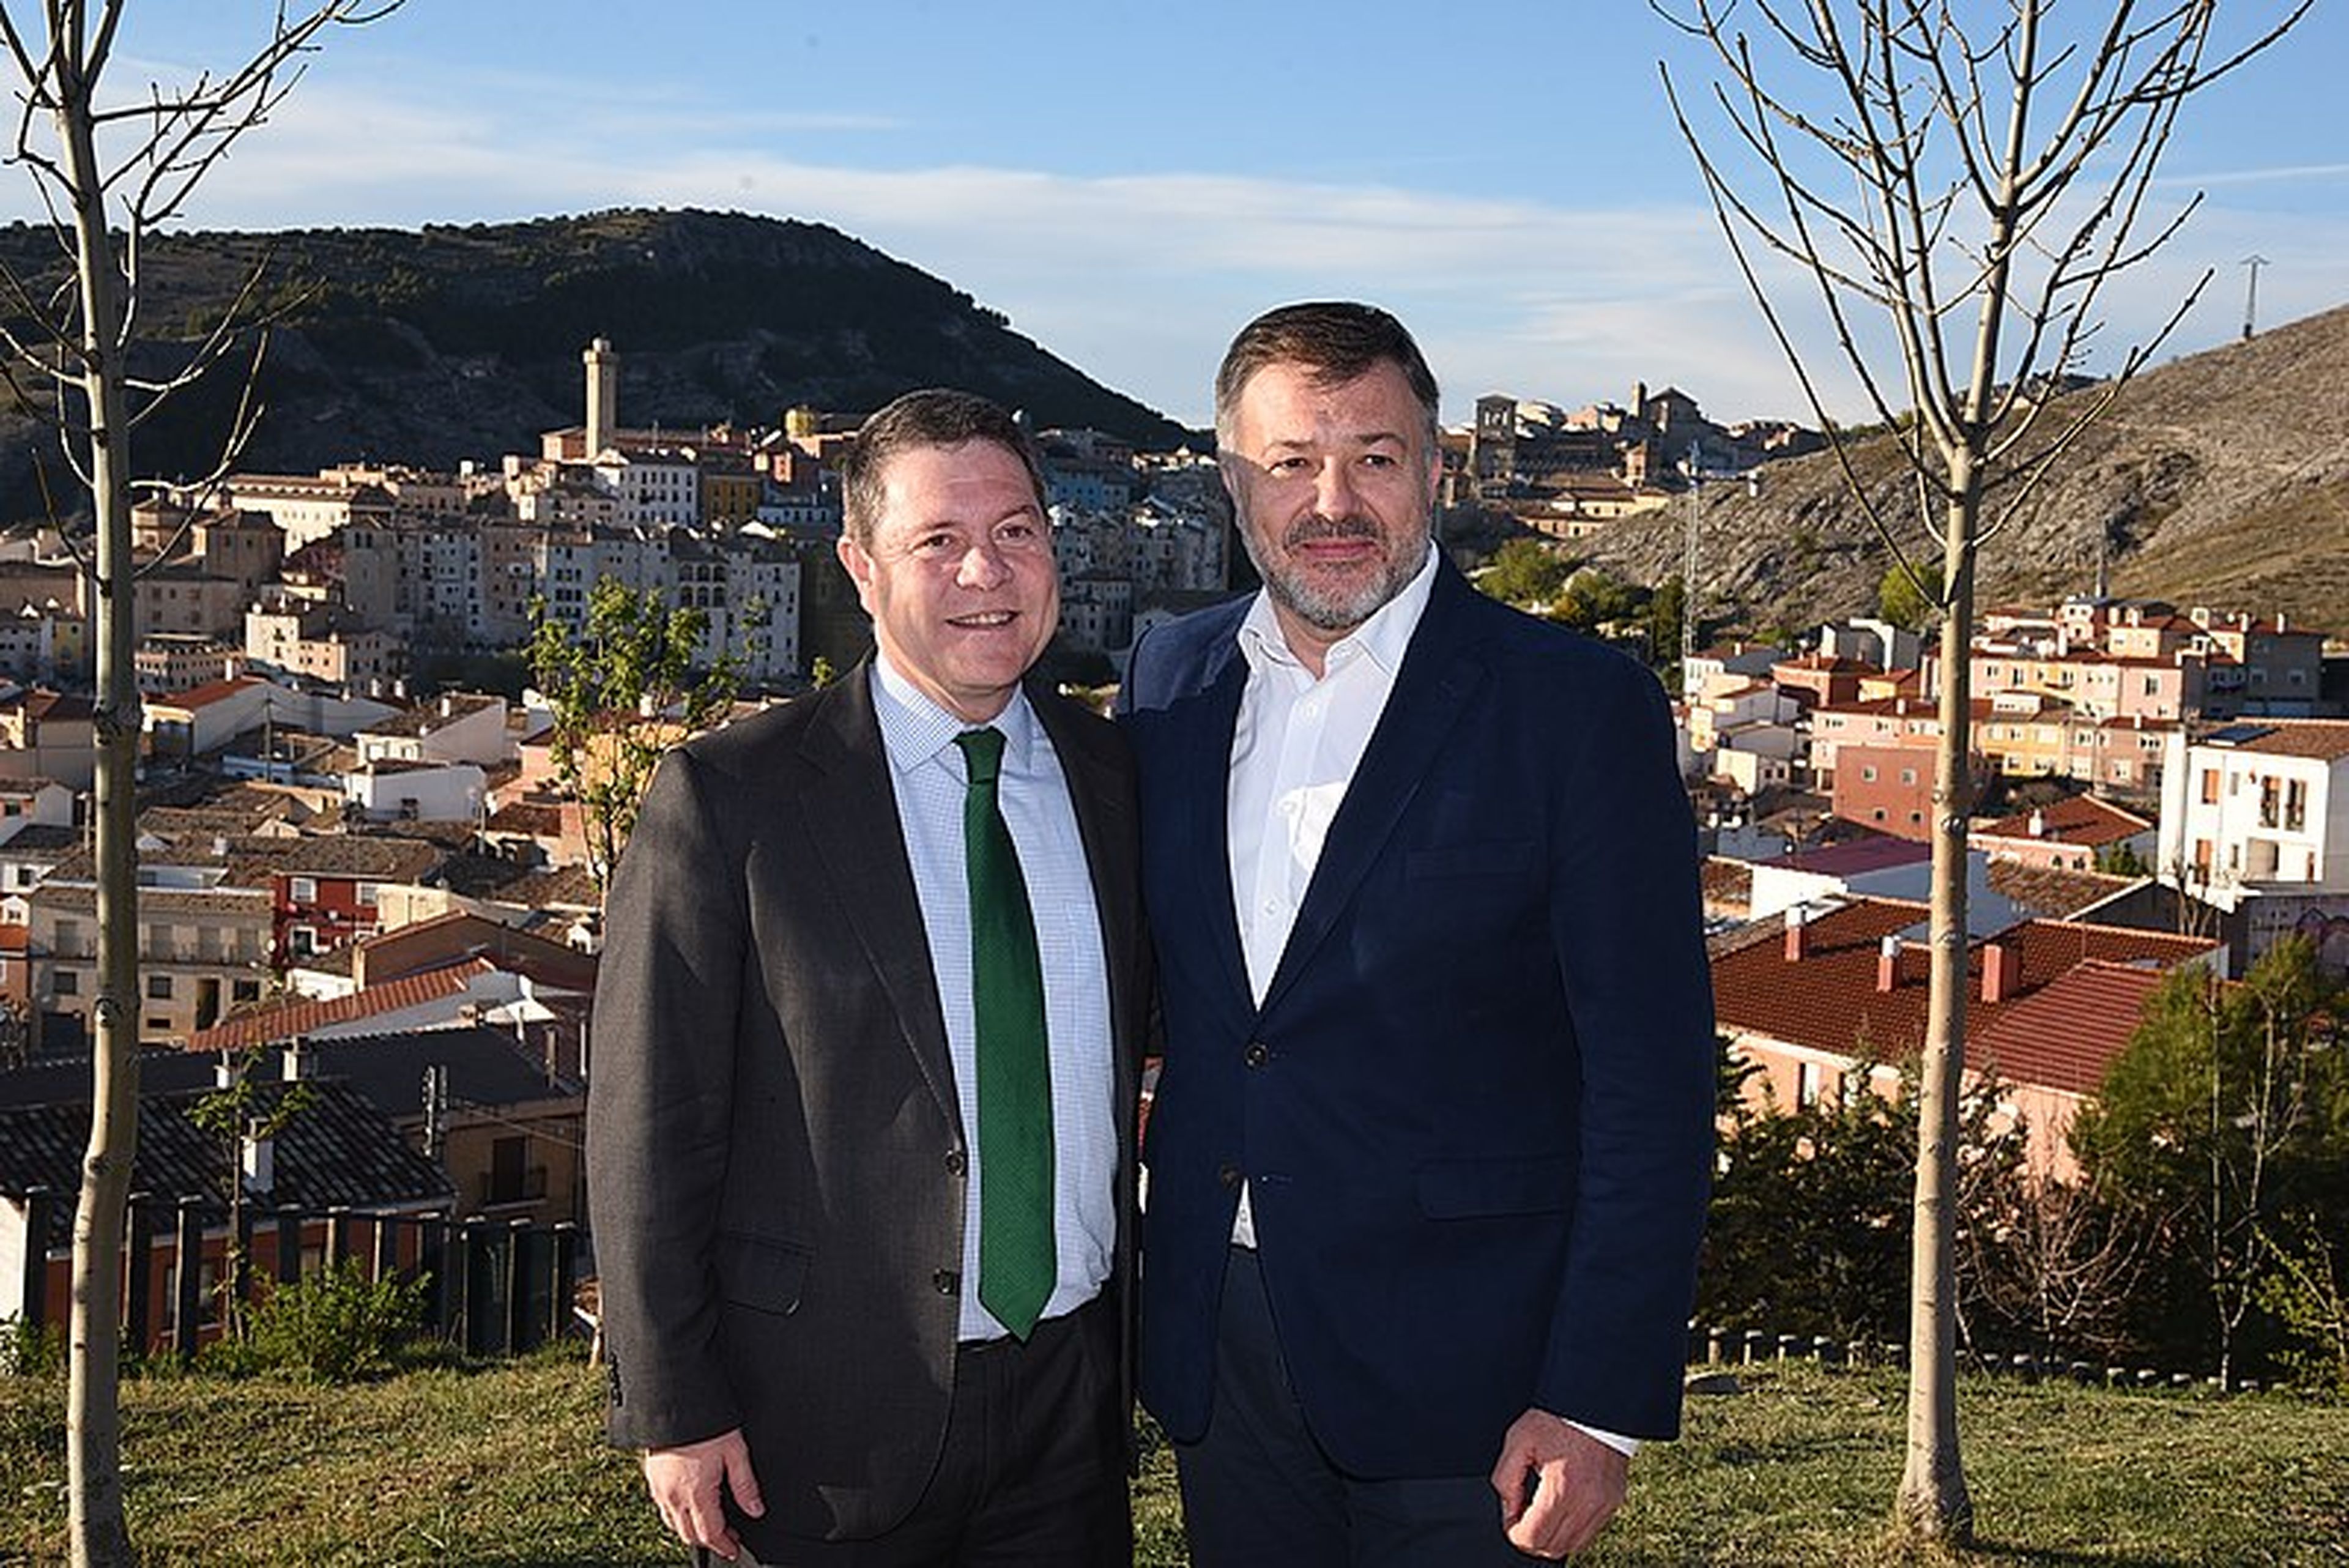 El alcalde de Cuenca, Darío Dolz (derecha), con el presidente de Castilla-La Mancha, Emiliano García-Page.